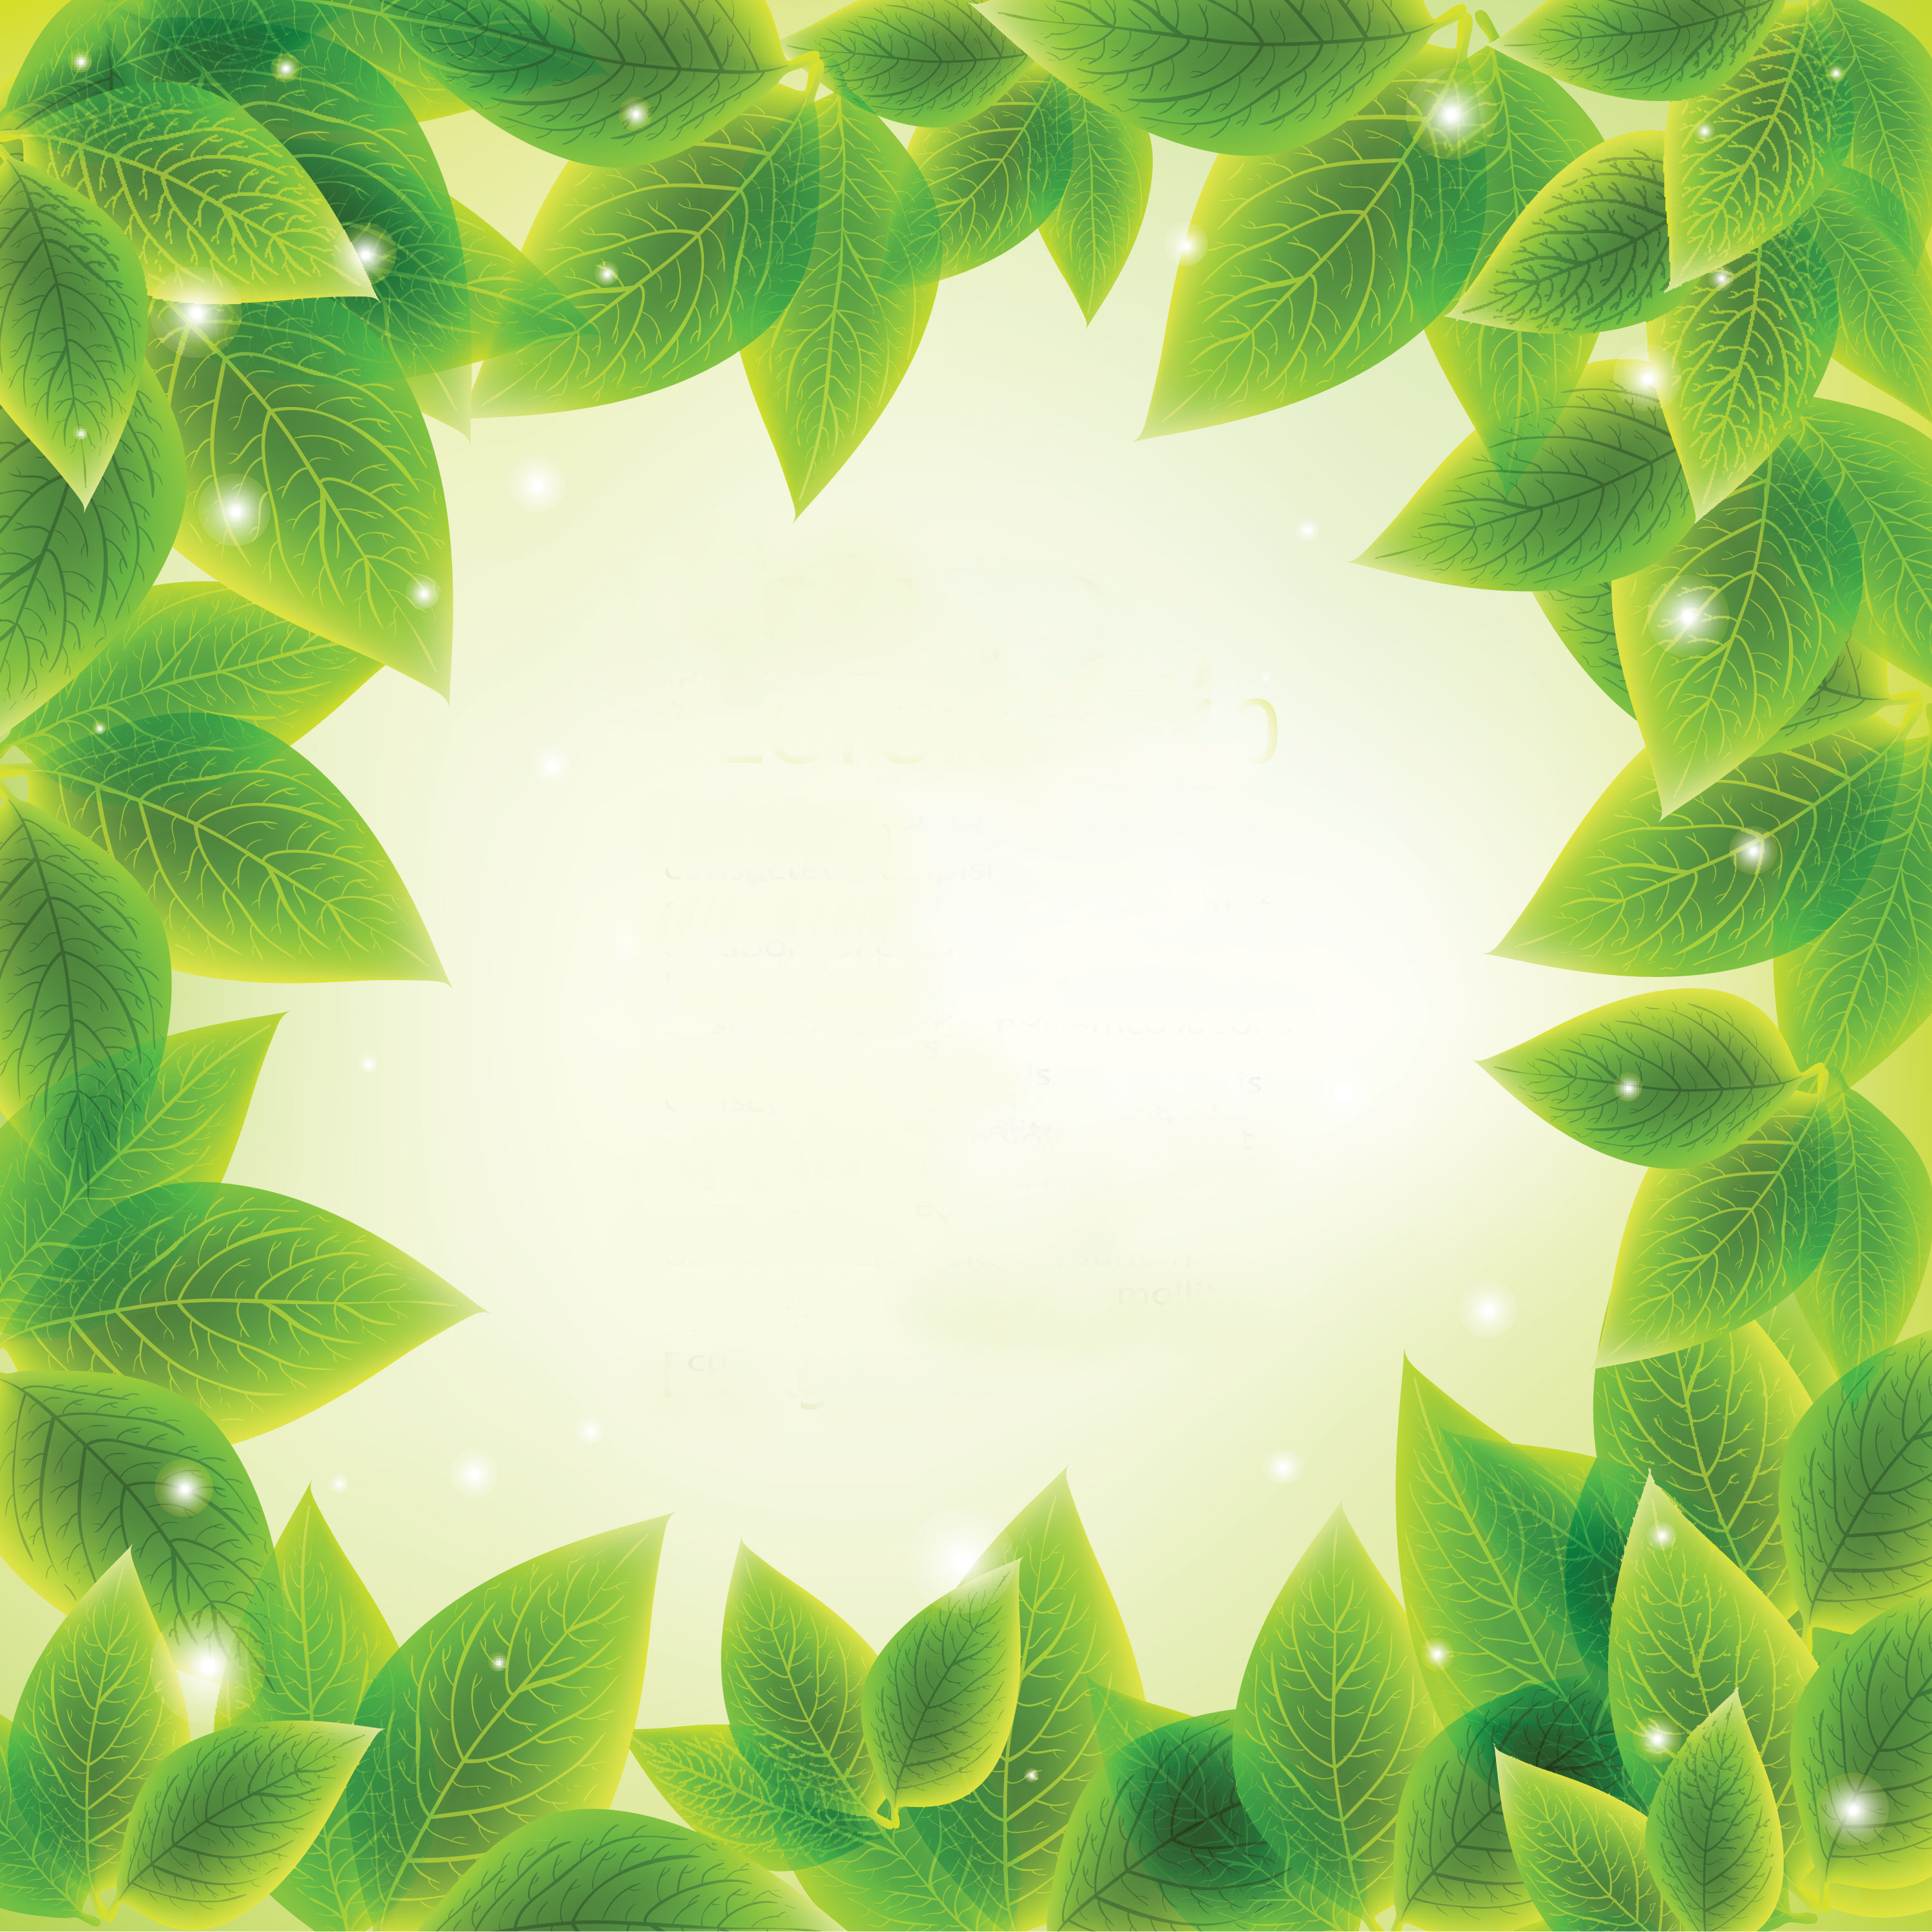 葉っぱや草木のイラスト 壁紙 背景no 036 夏の緑 光彩 淡い色